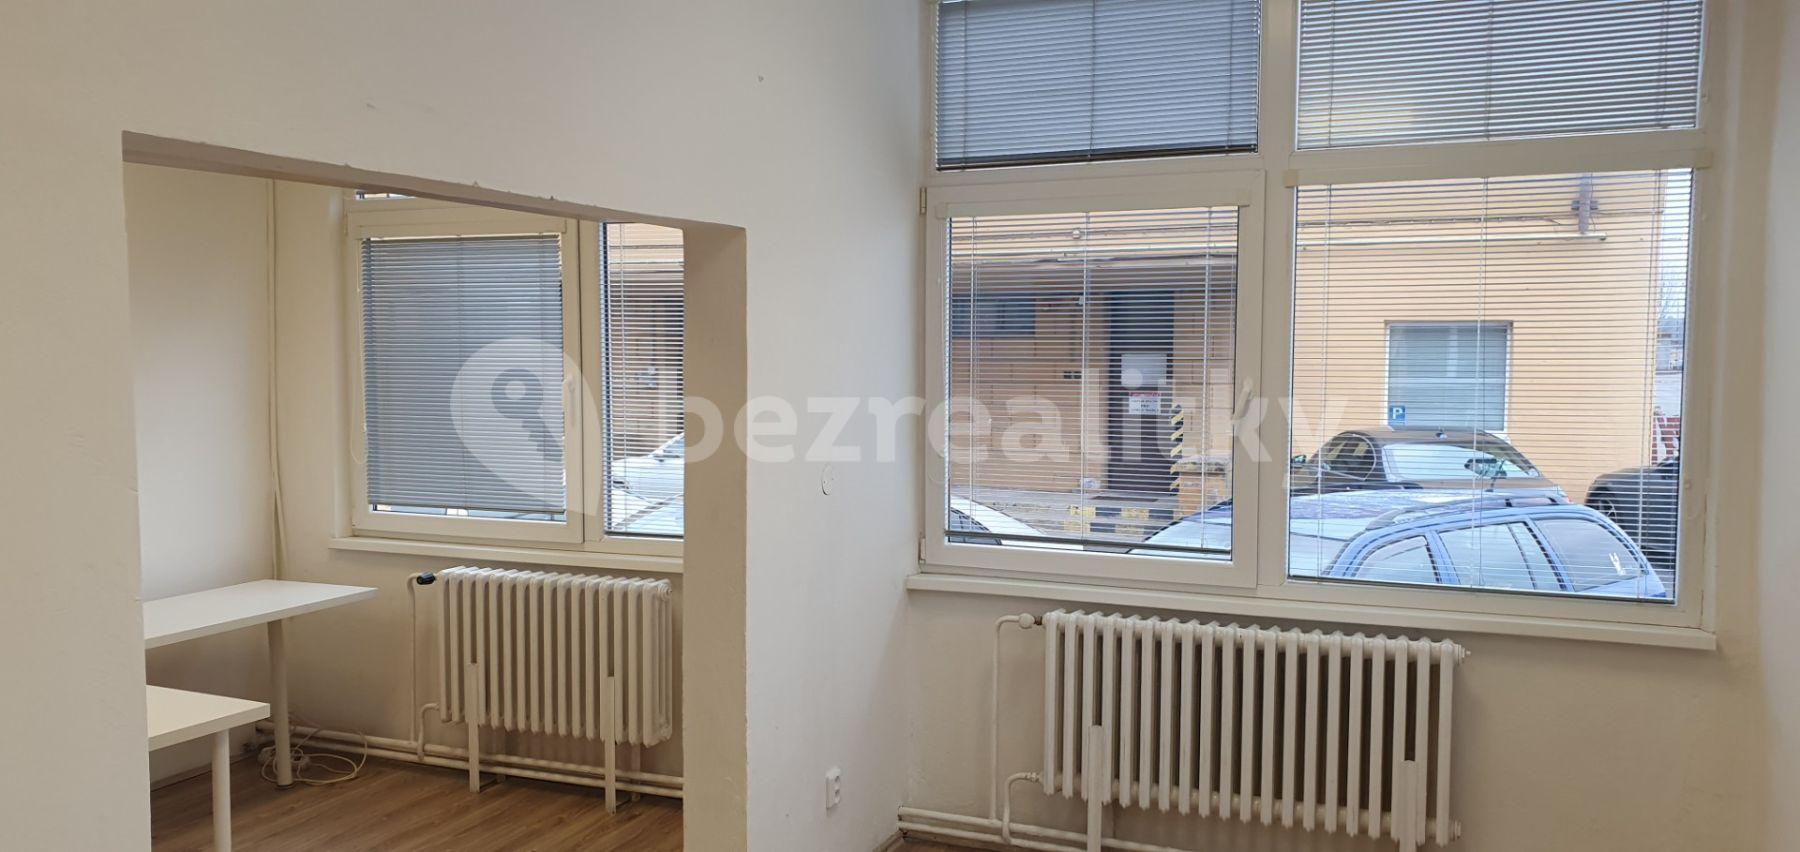 Pronájem kanceláře 18 m², Nádražní, Židlochovice, Jihomoravský kraj